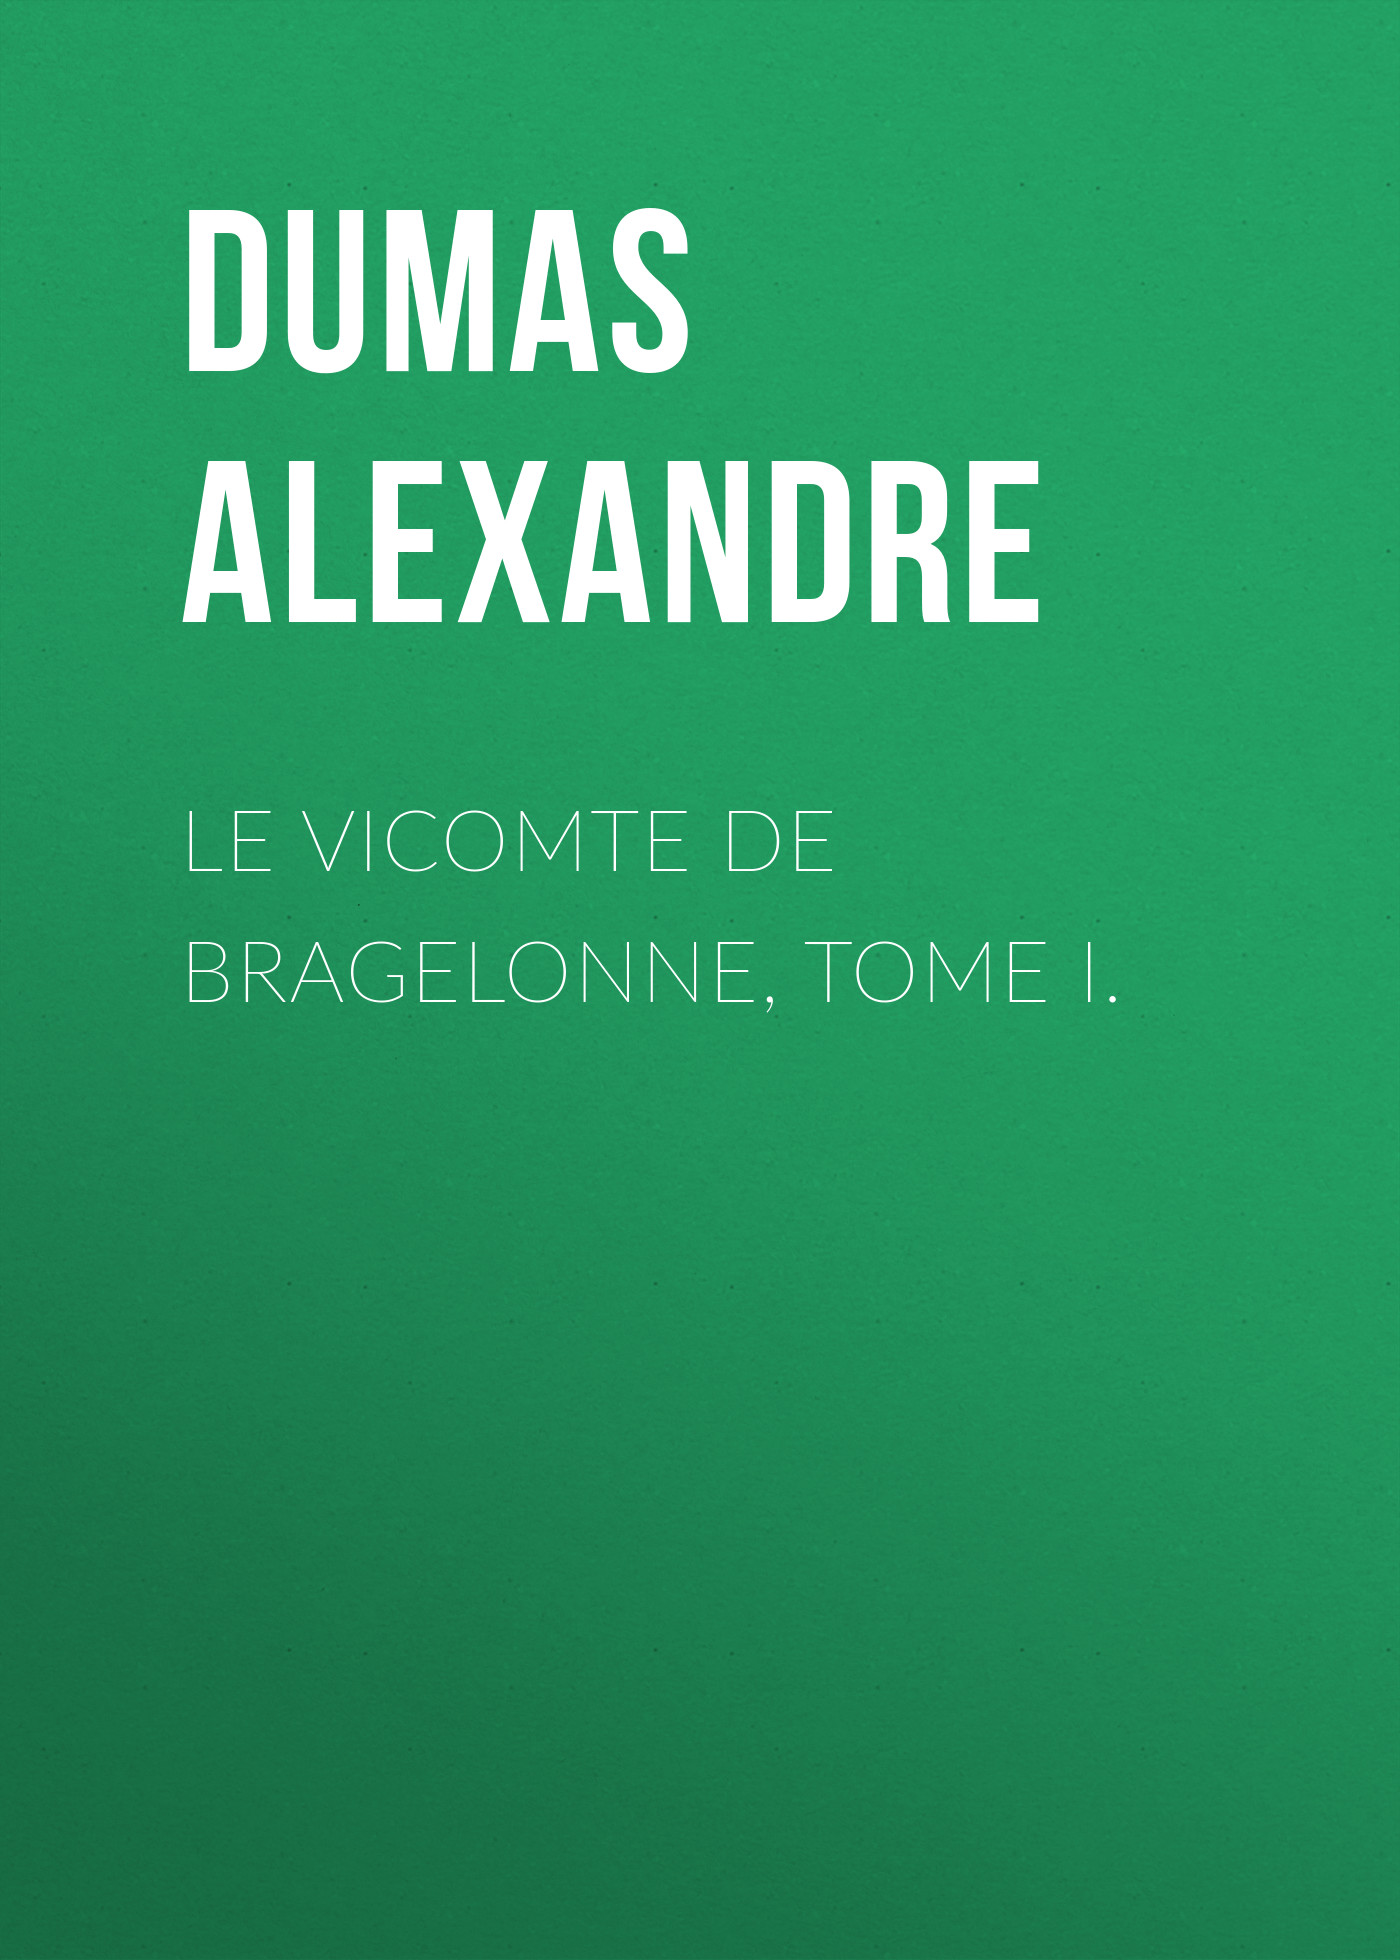 Книга Le vicomte de Bragelonne, Tome I. из серии , созданная Alexandre Dumas, может относится к жанру Литература 19 века, Зарубежная старинная литература, Зарубежная классика. Стоимость электронной книги Le vicomte de Bragelonne, Tome I. с идентификатором 25201527 составляет 0 руб.